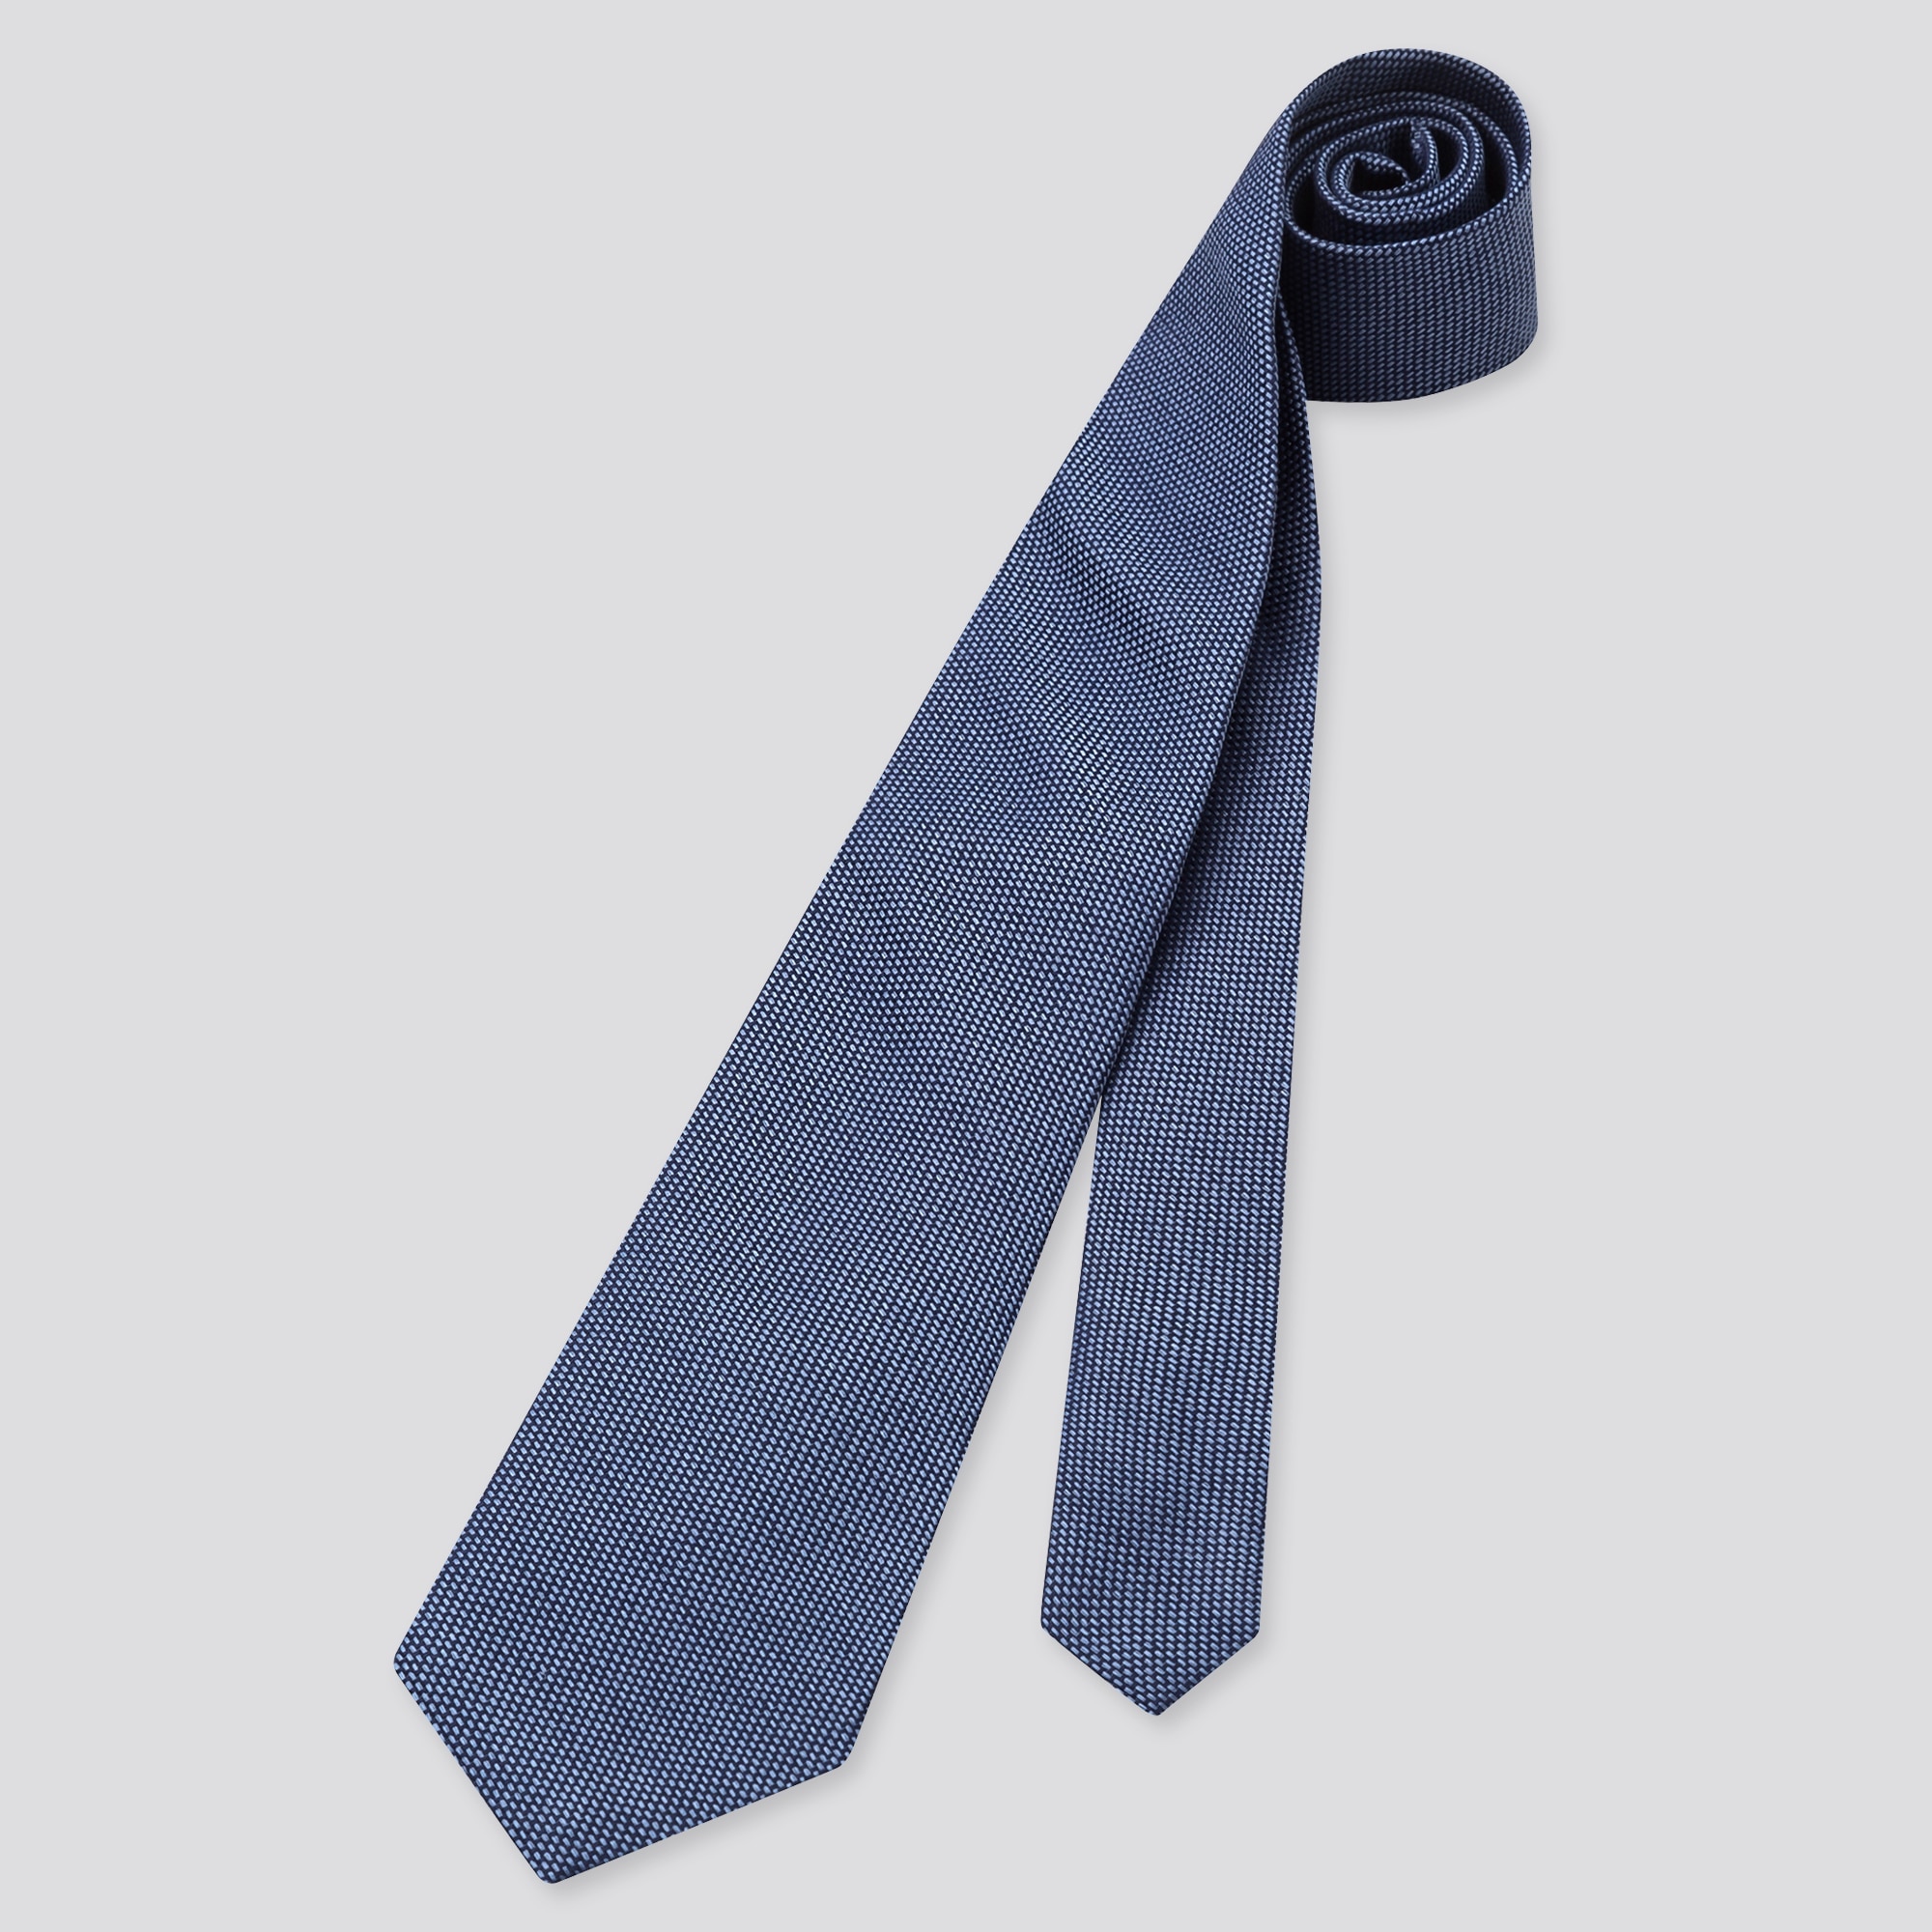 ネクタイ かわいい結び方の関連商品 ユニクロ